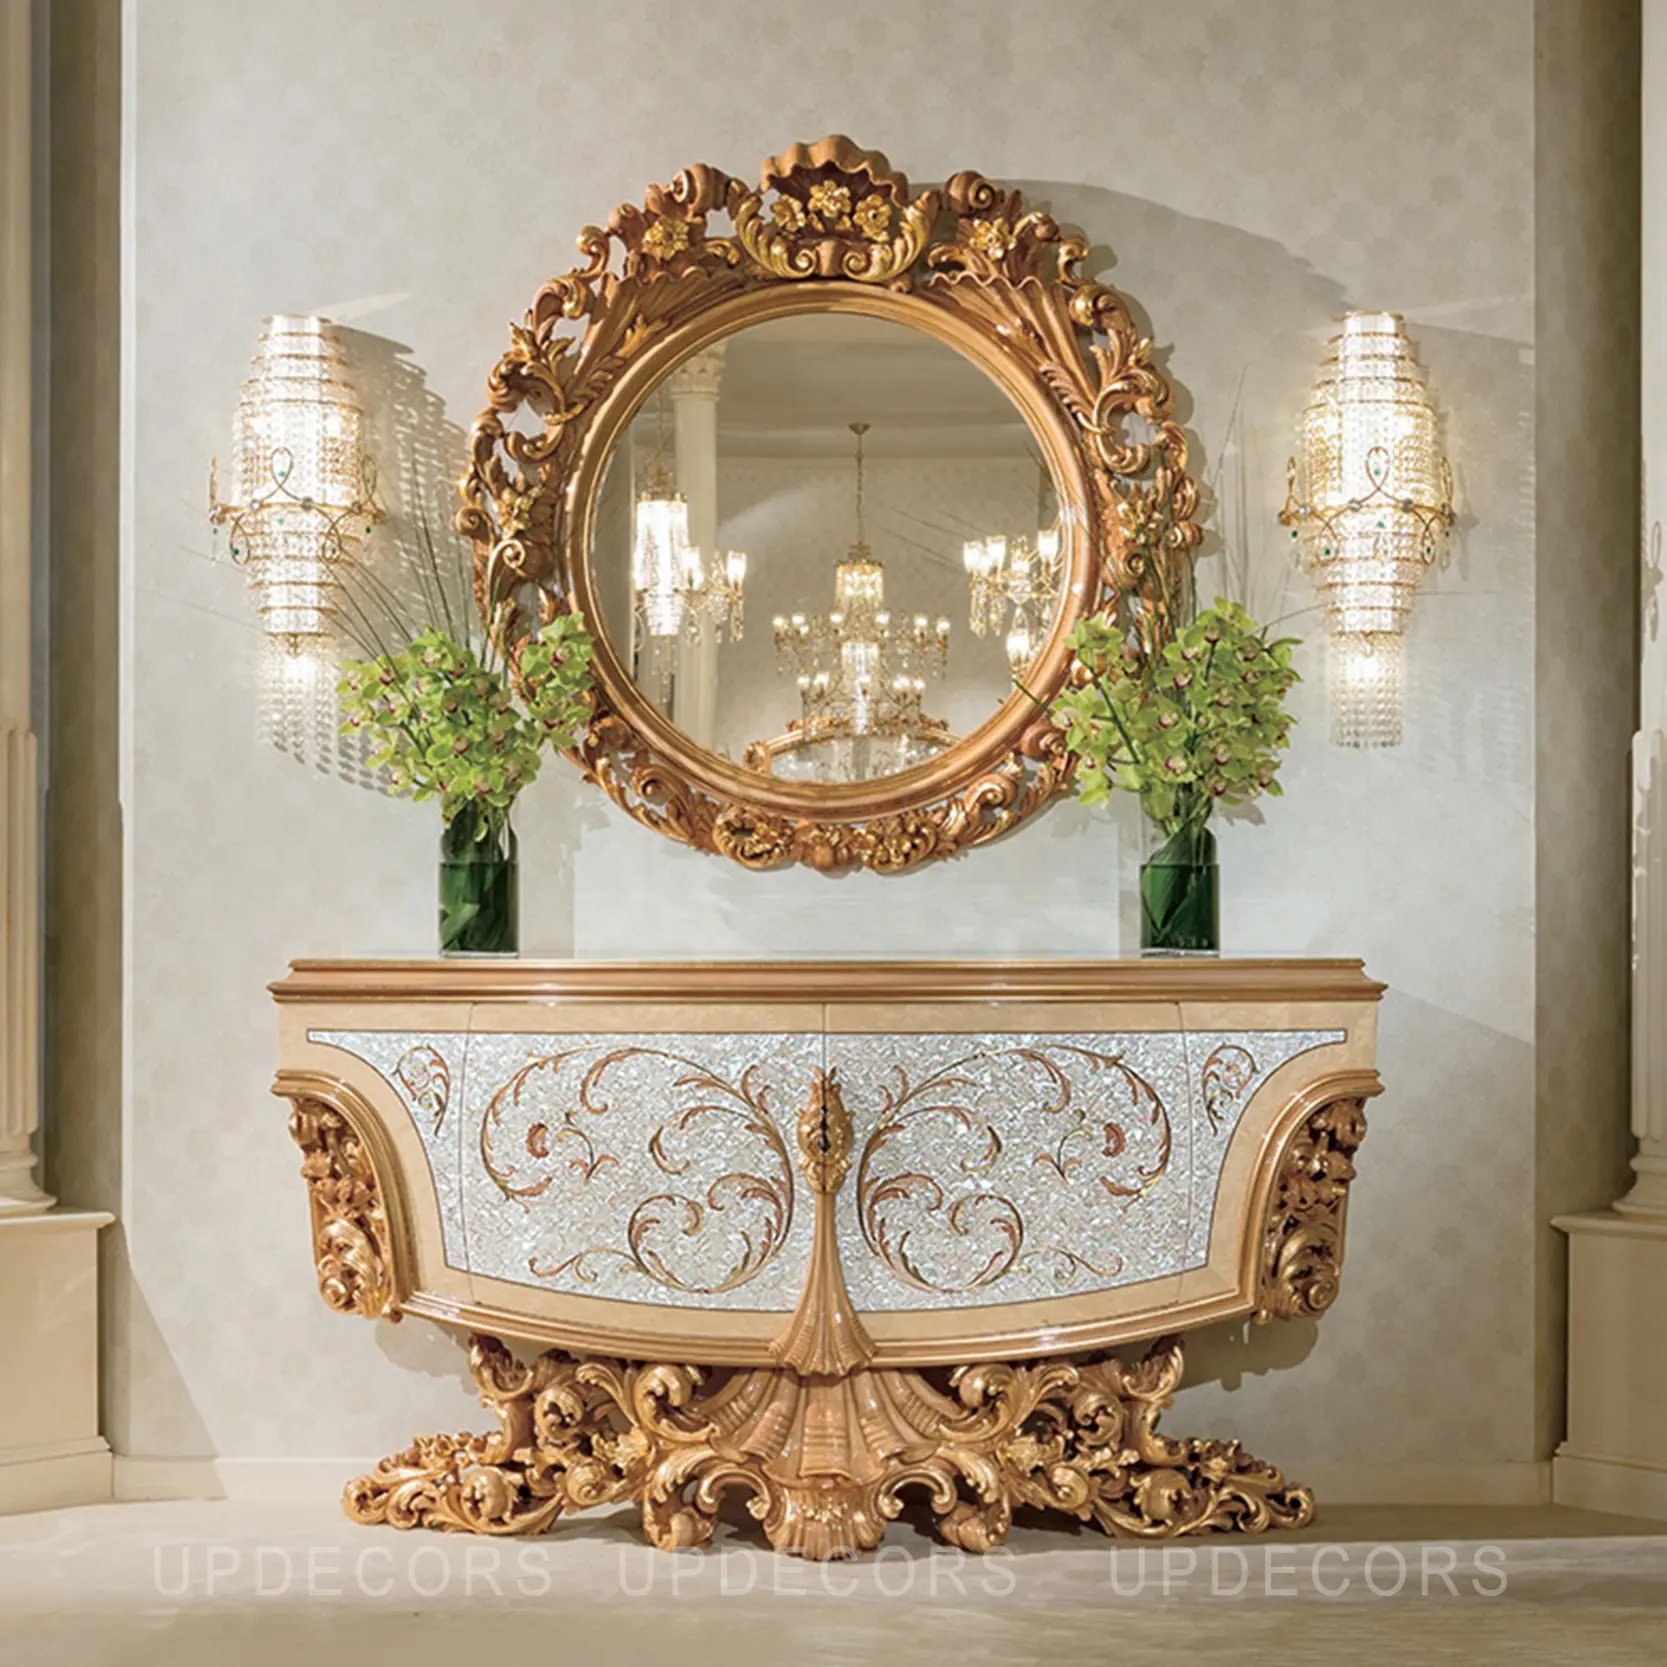 Consolle intagliata a mano 100% in legno massello classico di design italiano con mobili dipinti antichi con specchio